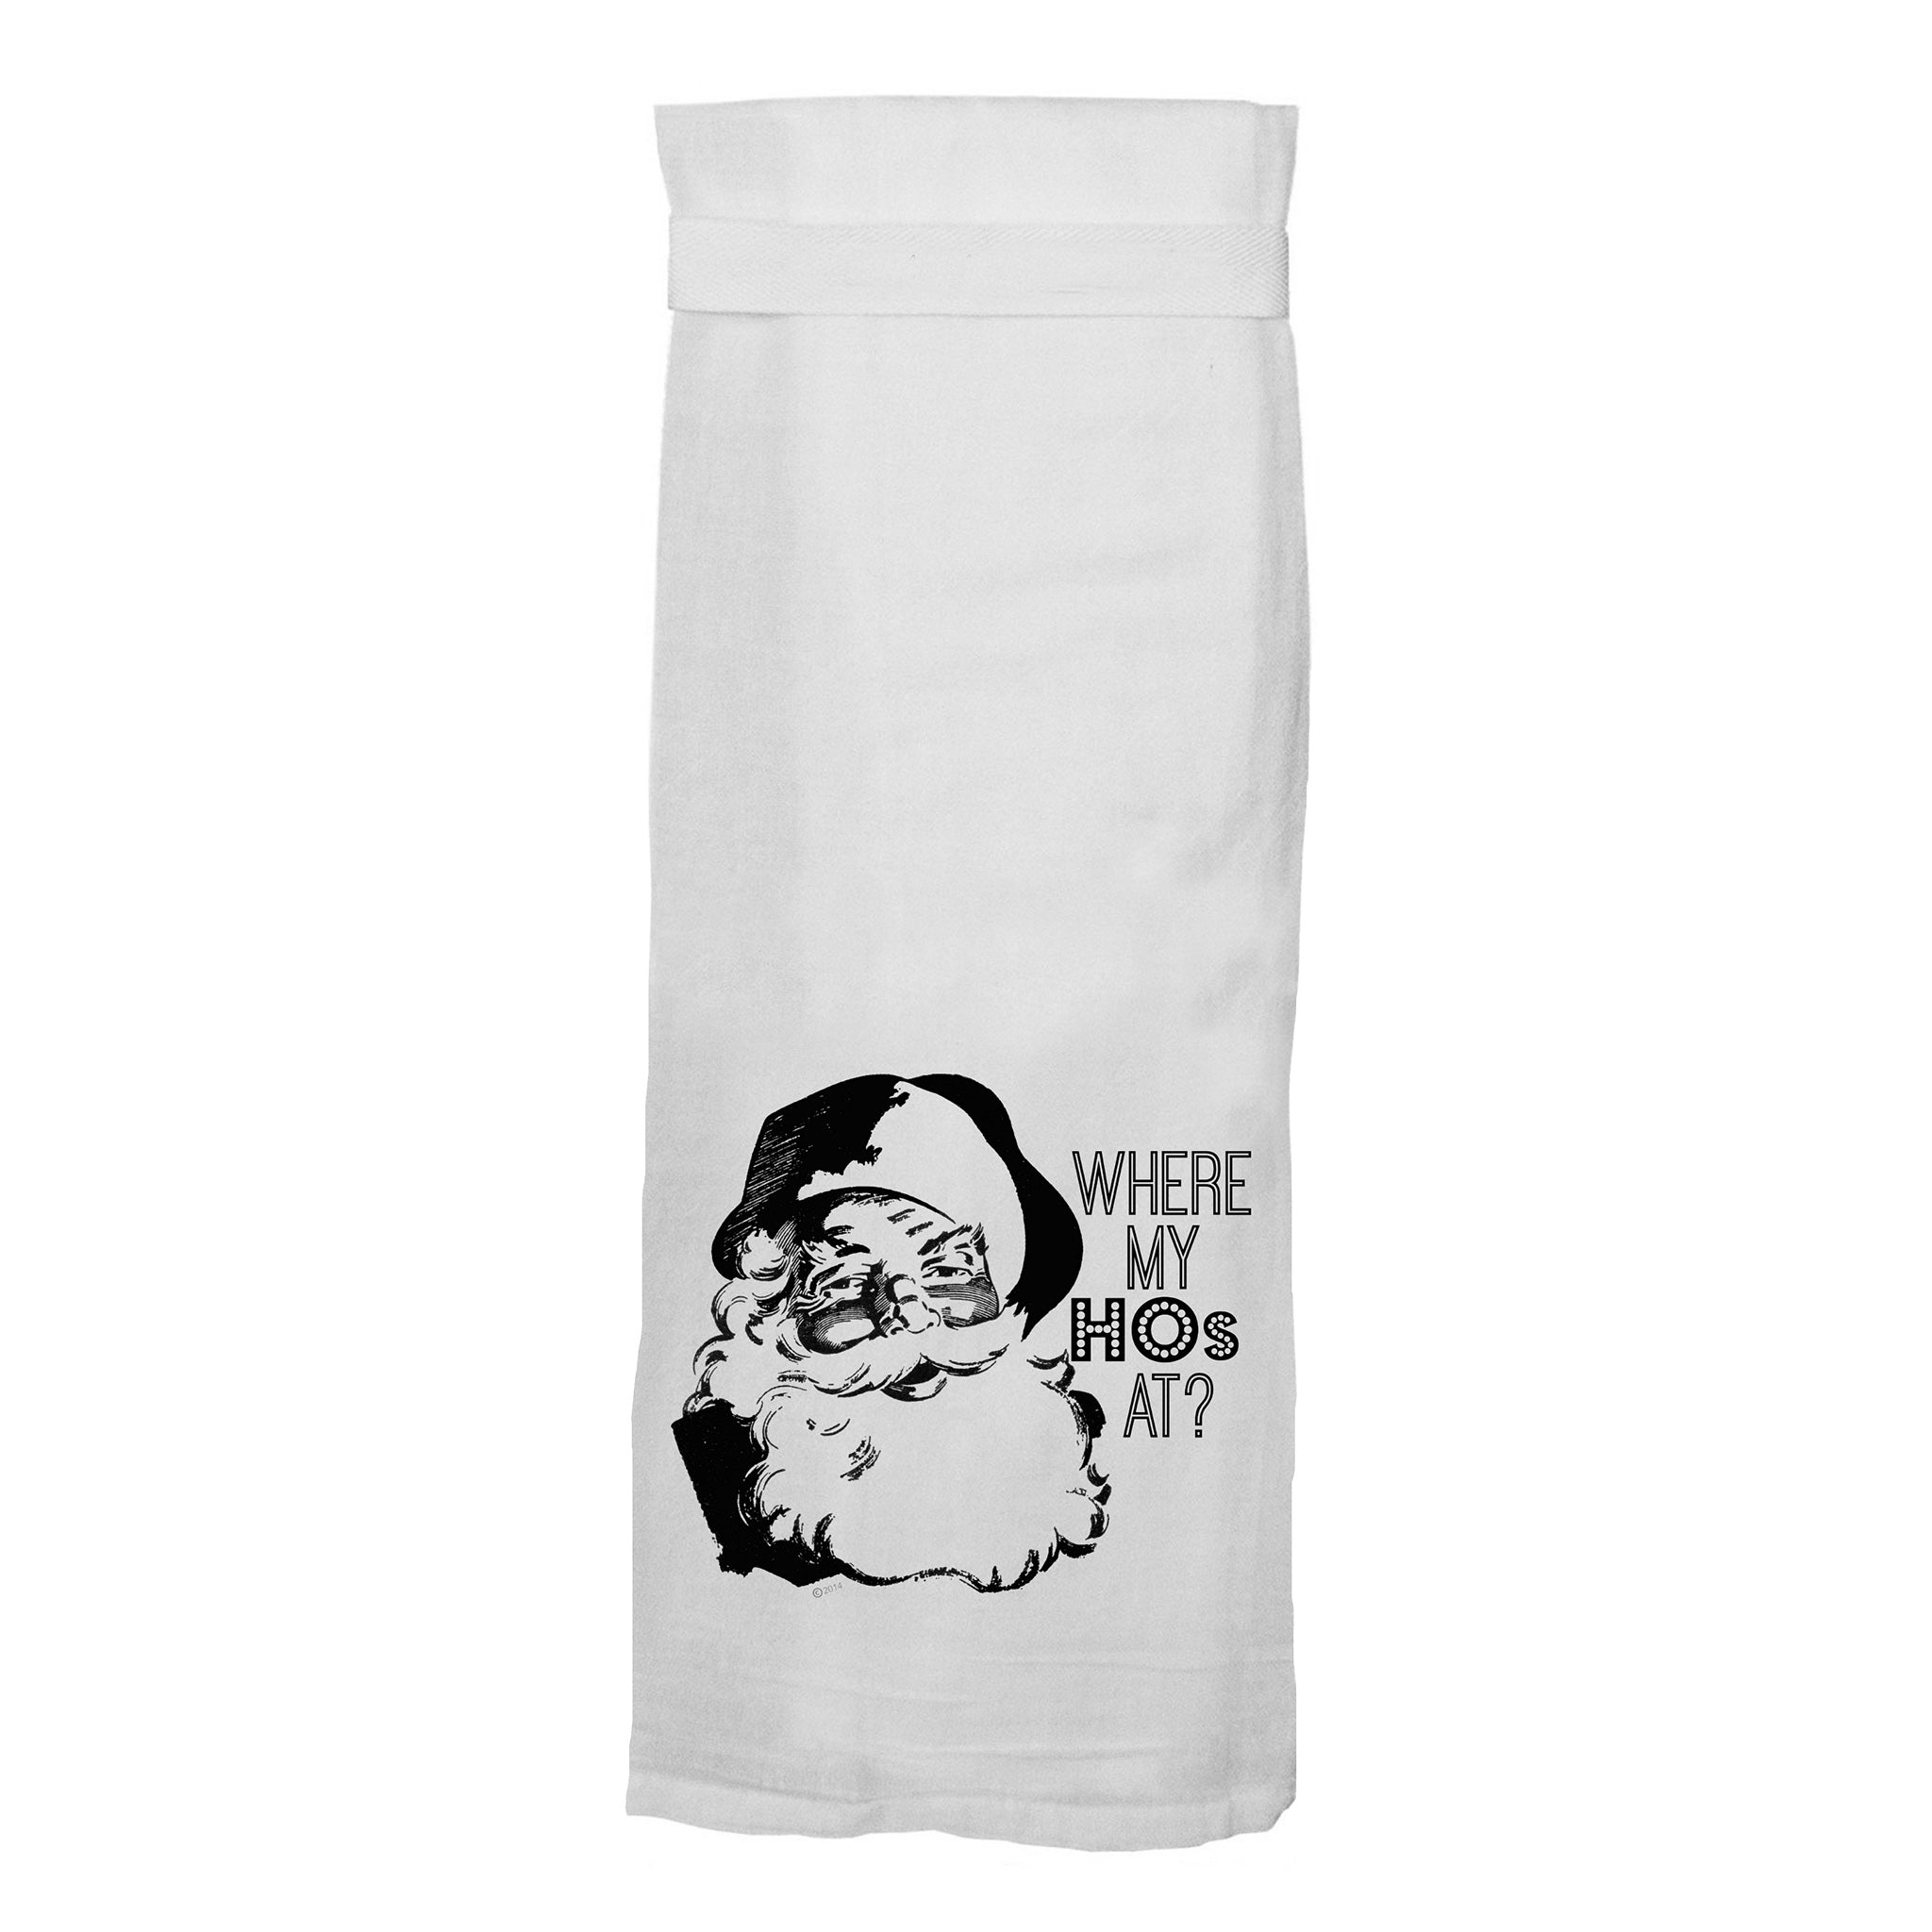 Ho Ho Ho Holiday Dish Cloth Towel / Novelty Silly Tea Towels / Cute Hi –  The Bullish Store